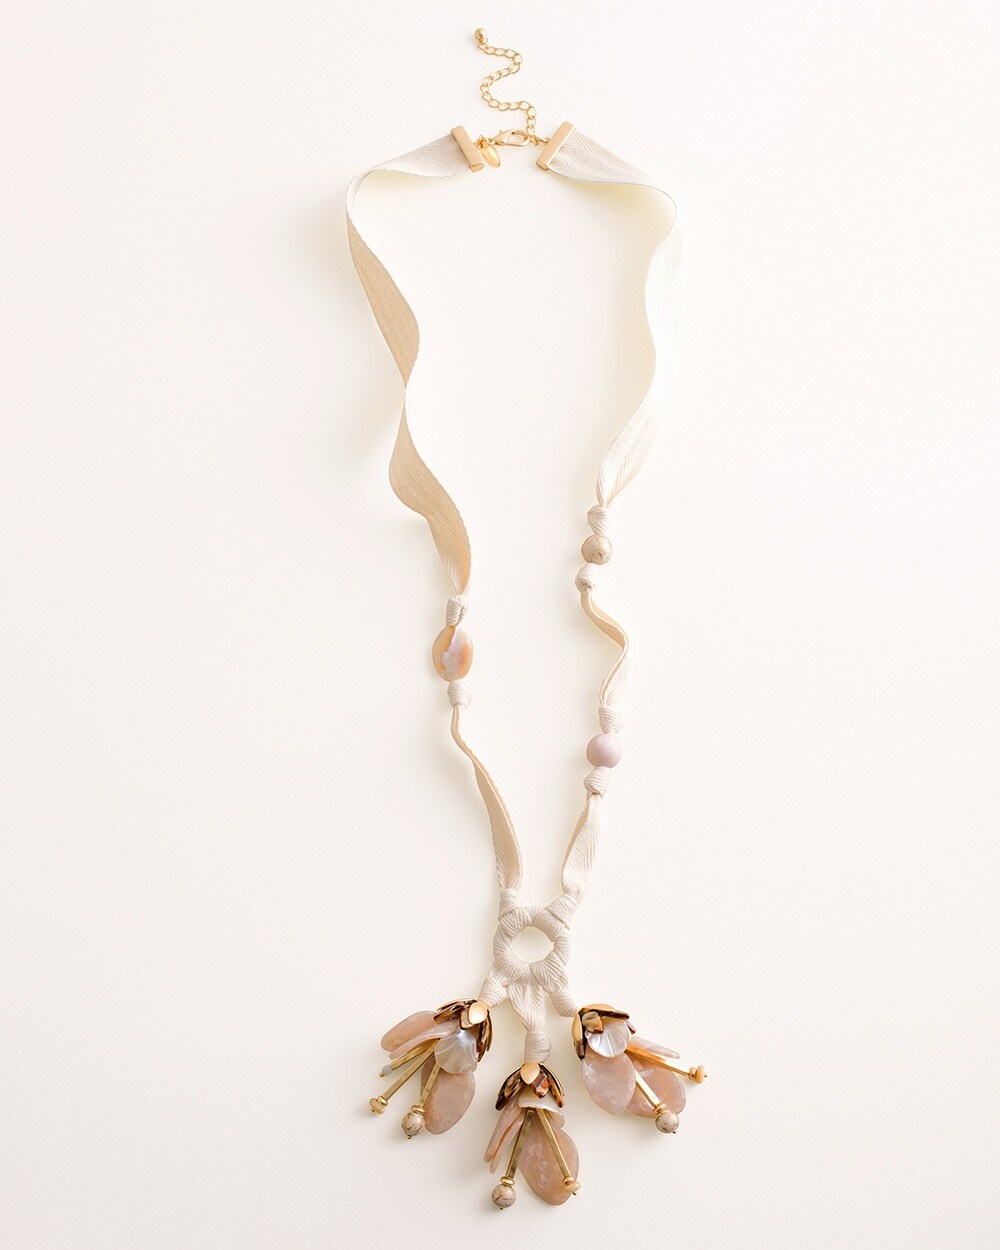 Floral Pendant Necklace